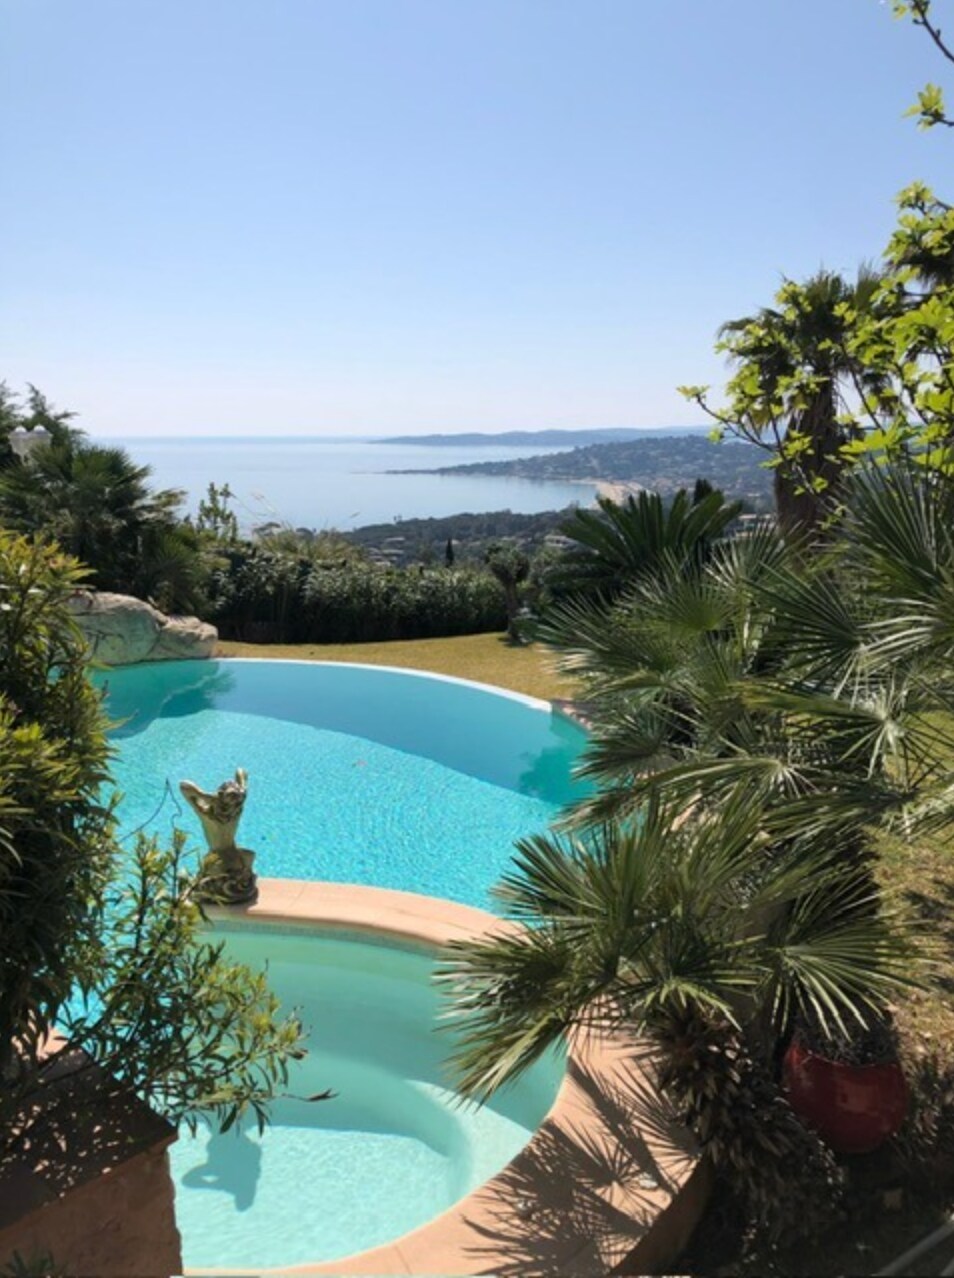 Vue panoramique sur le golfe de St Tropez